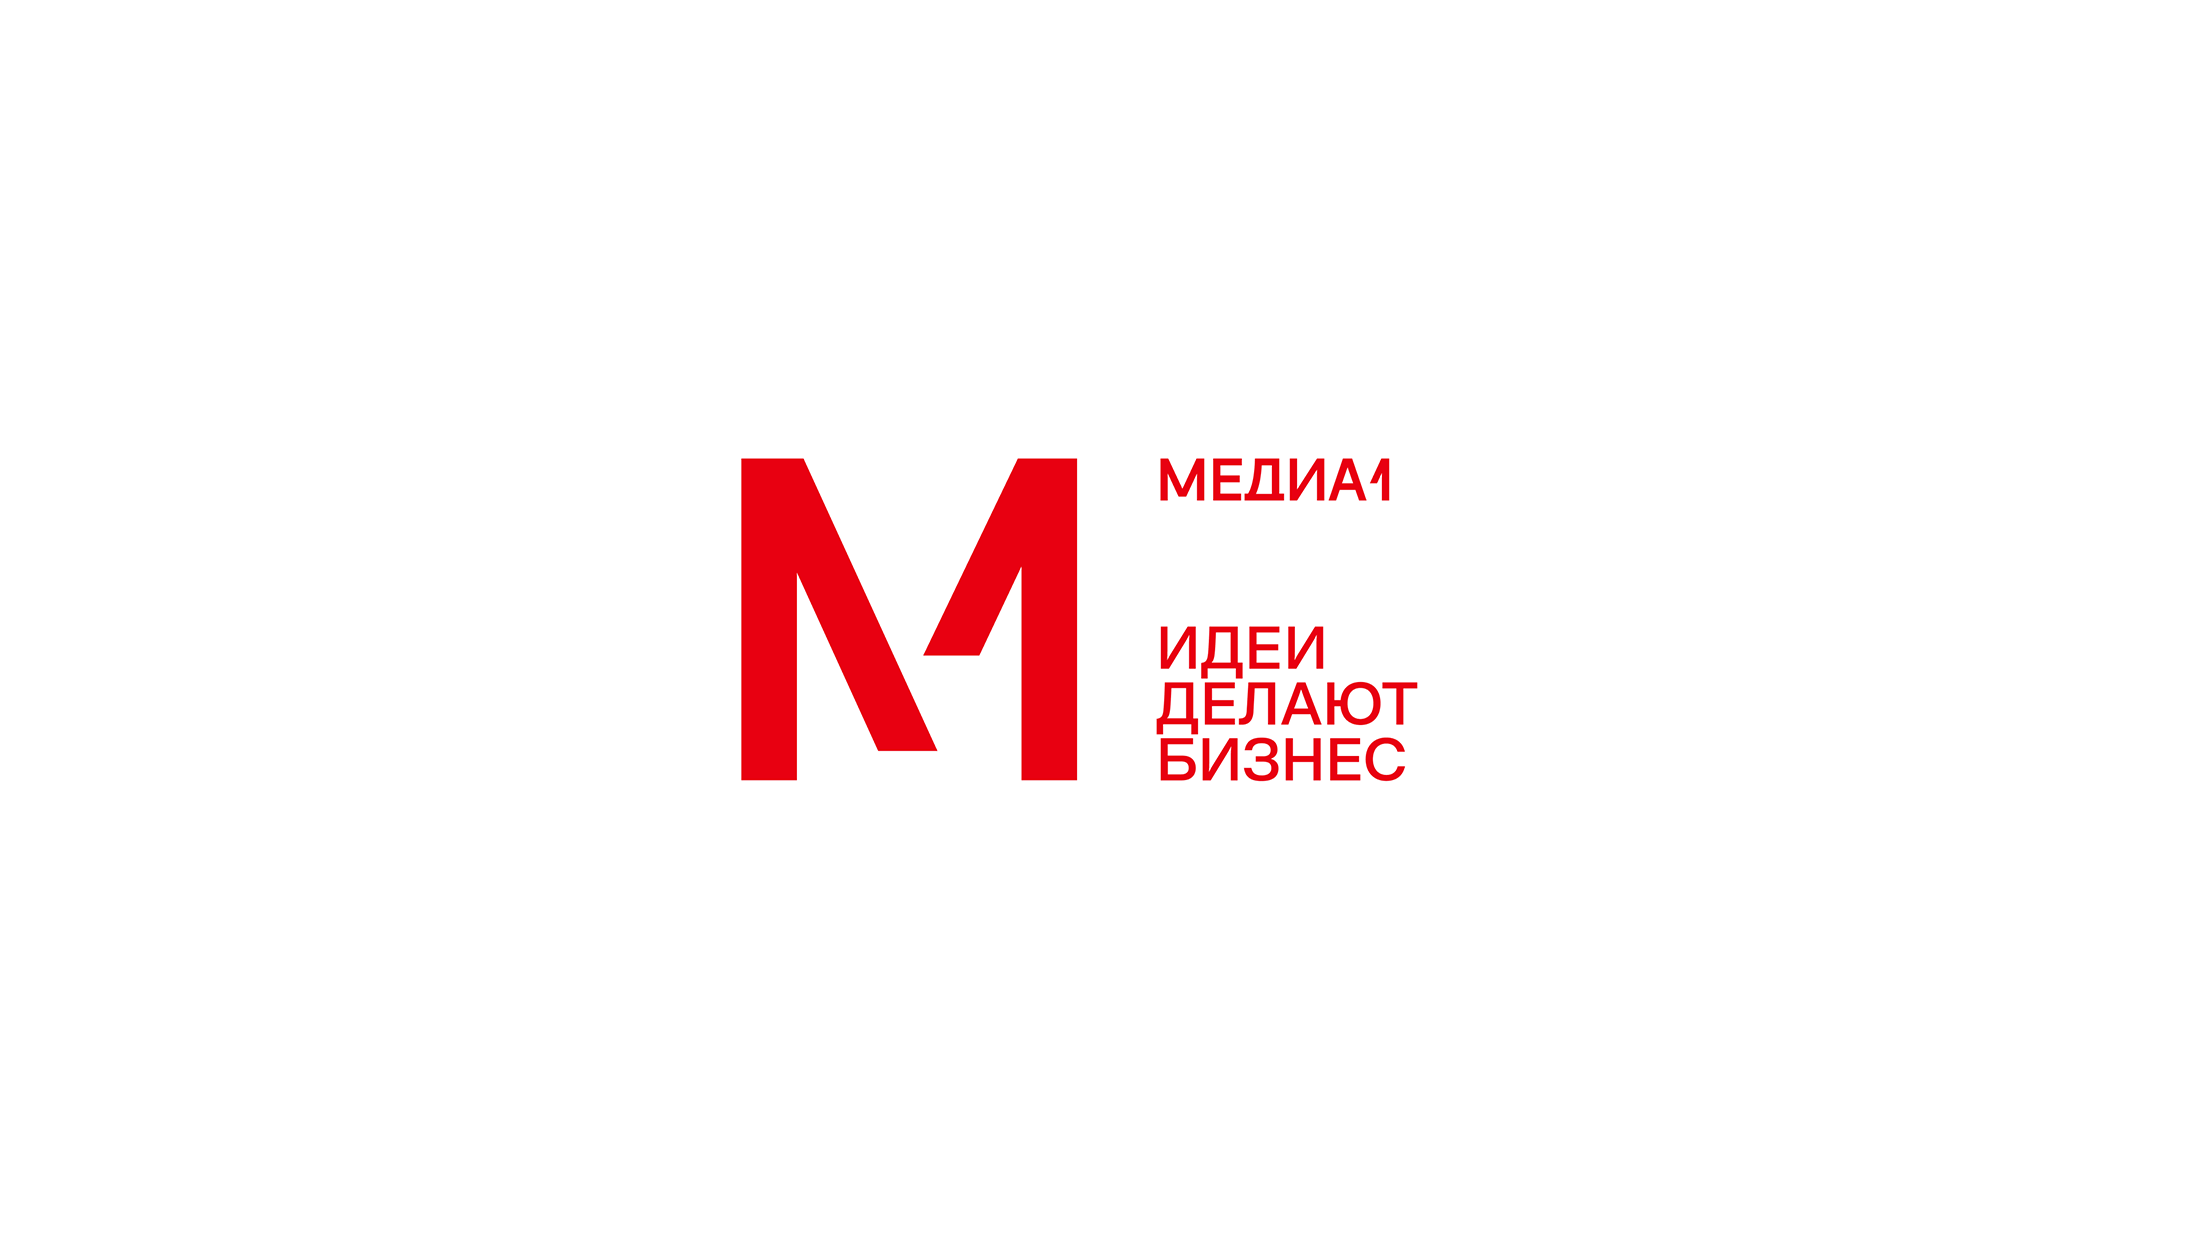 Медиа1 компания. Первый Медиа Холдинг. Первые Медиа логотип. Группа компаний Медиа 1. Медиа группа 1 1